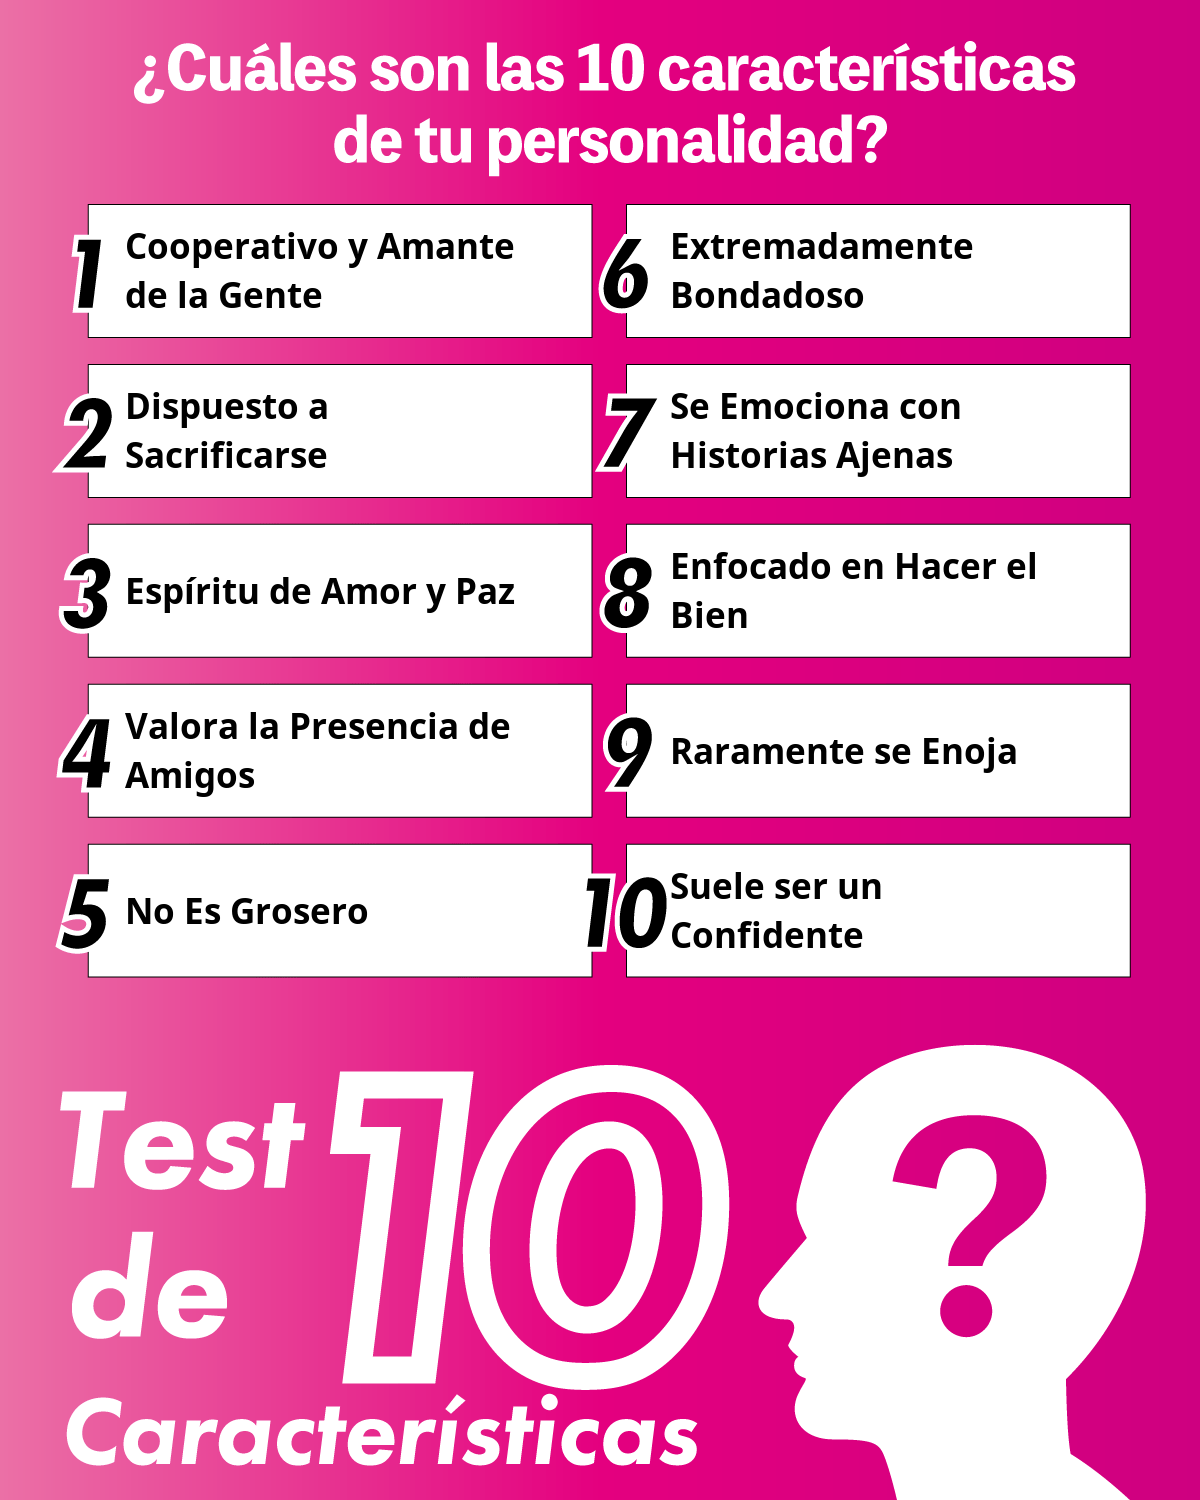 Test de 10 Características | ¿Cuáles son las 10 características de tu personalidad?